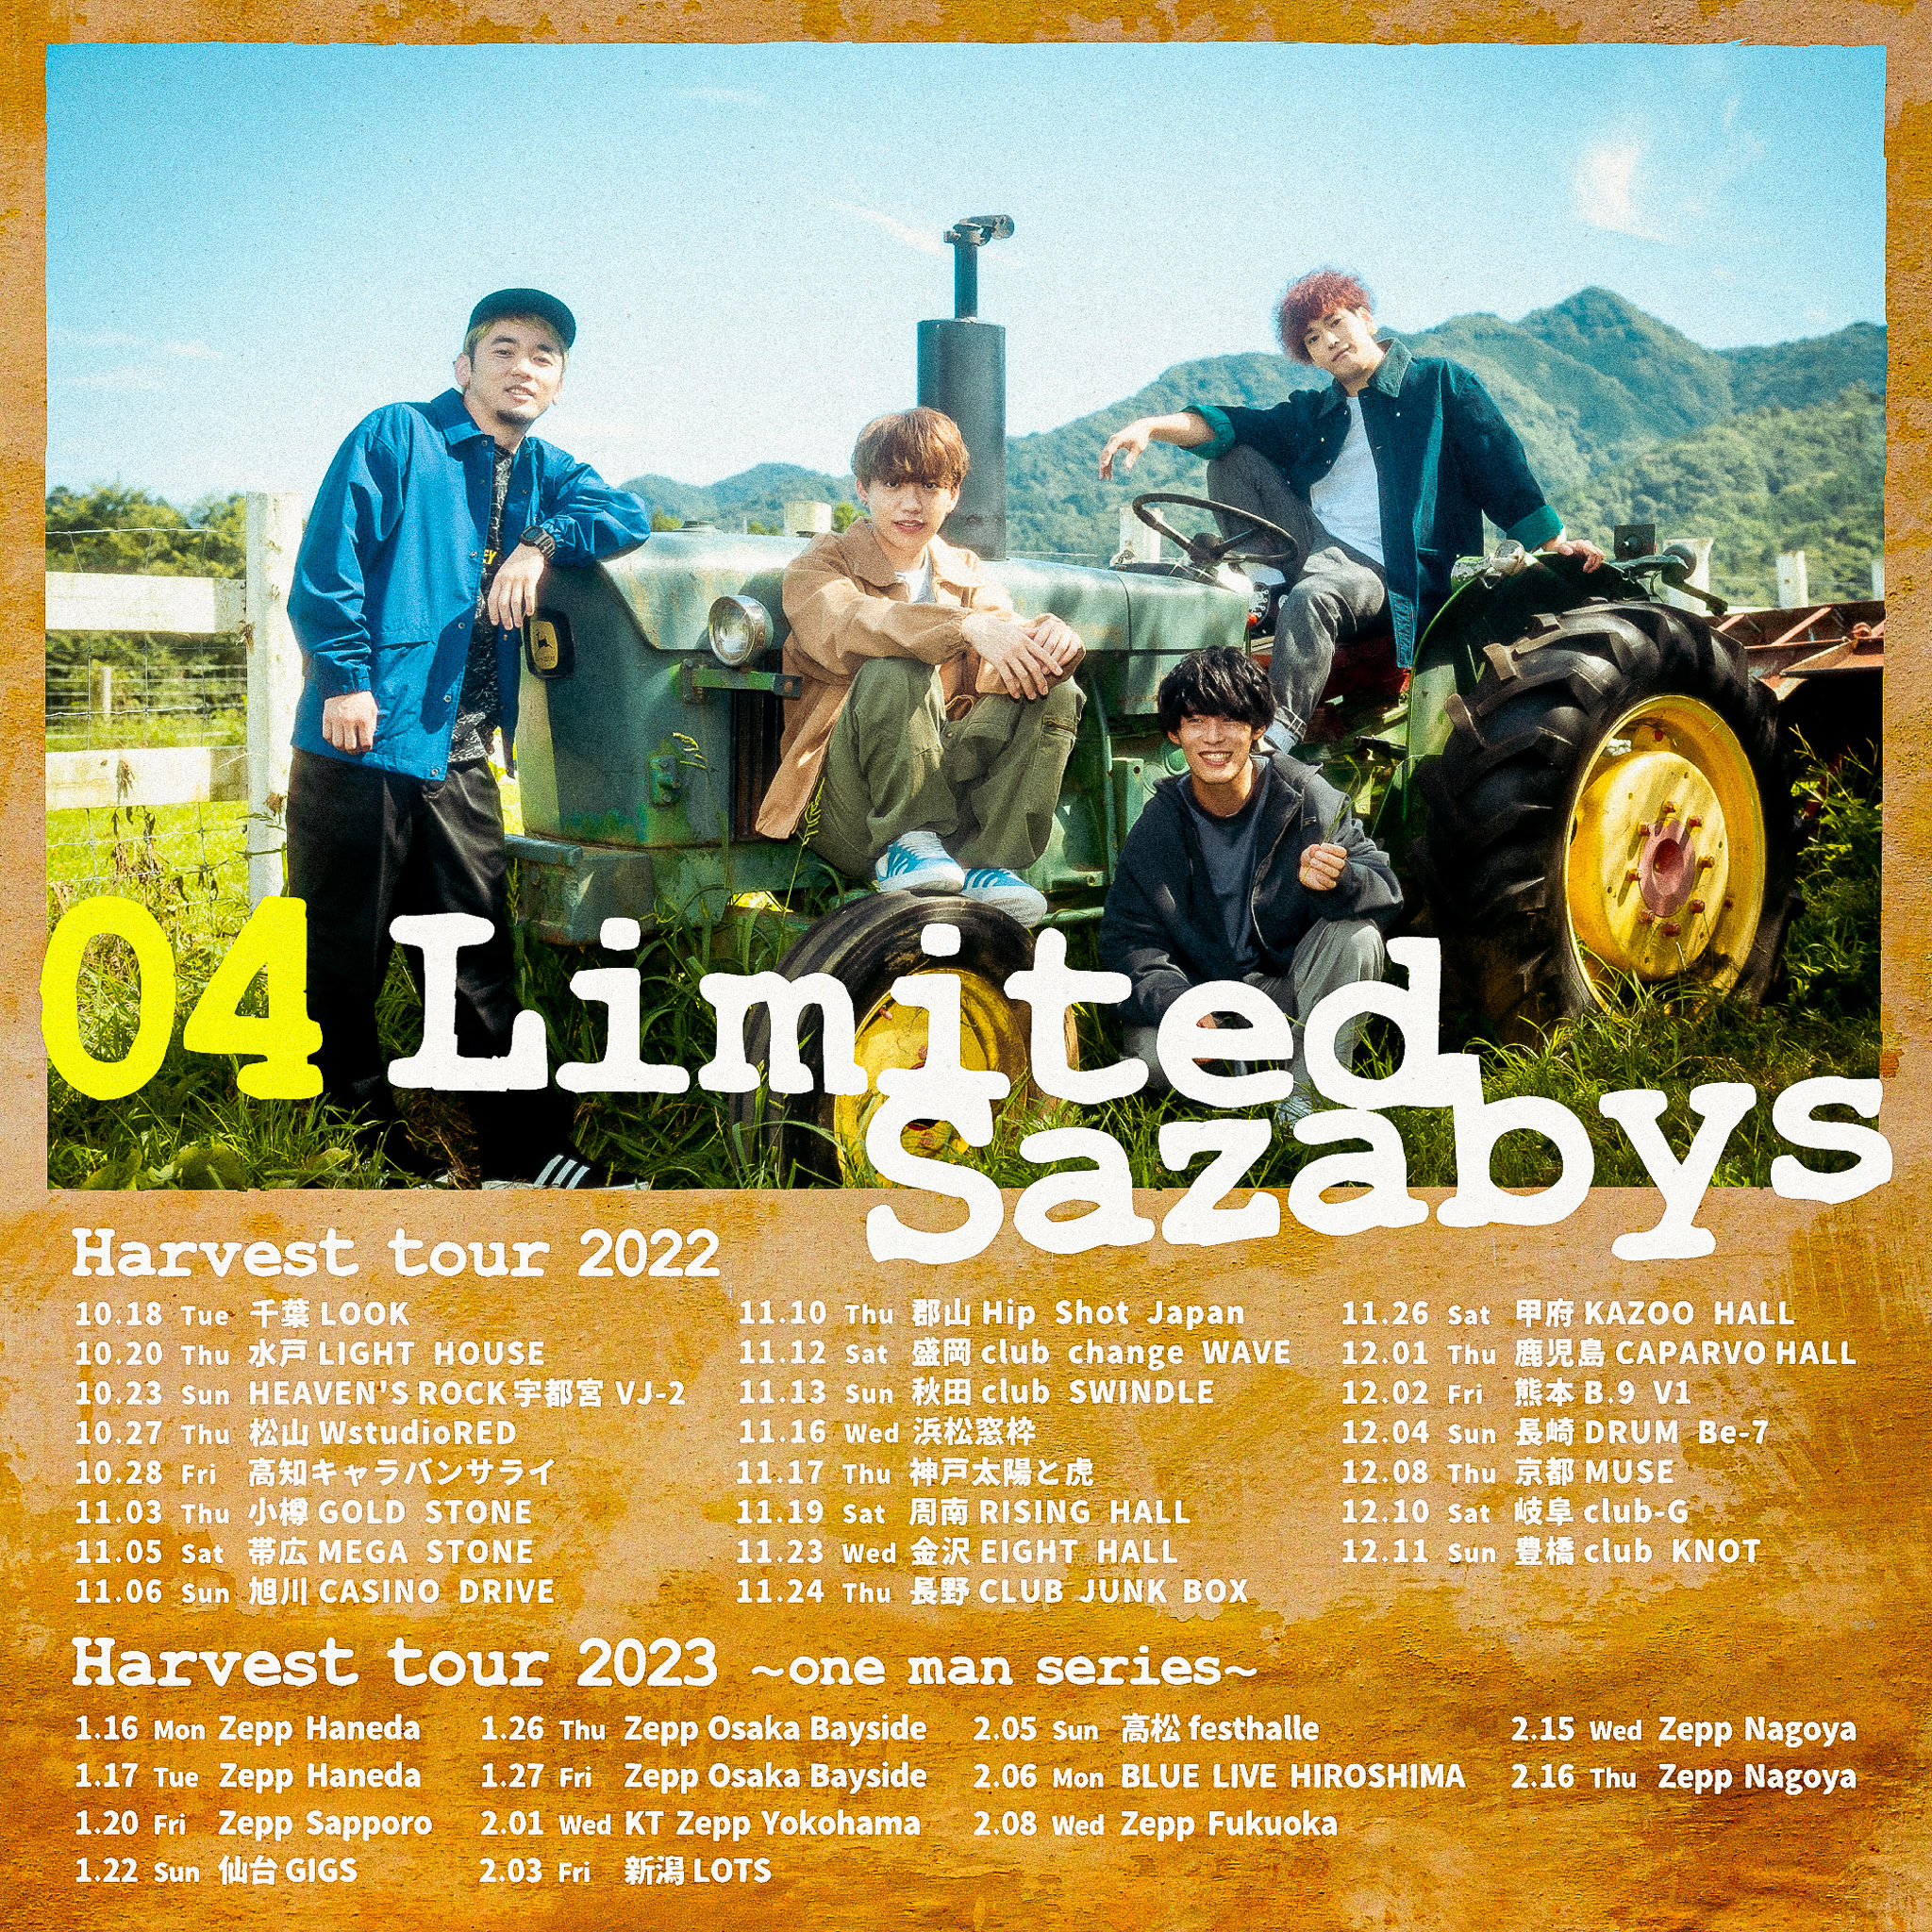 【愛知】04 Limited Sazabys "Harvest tour 2023 〜one man series〜" (Zepp Nagoya)